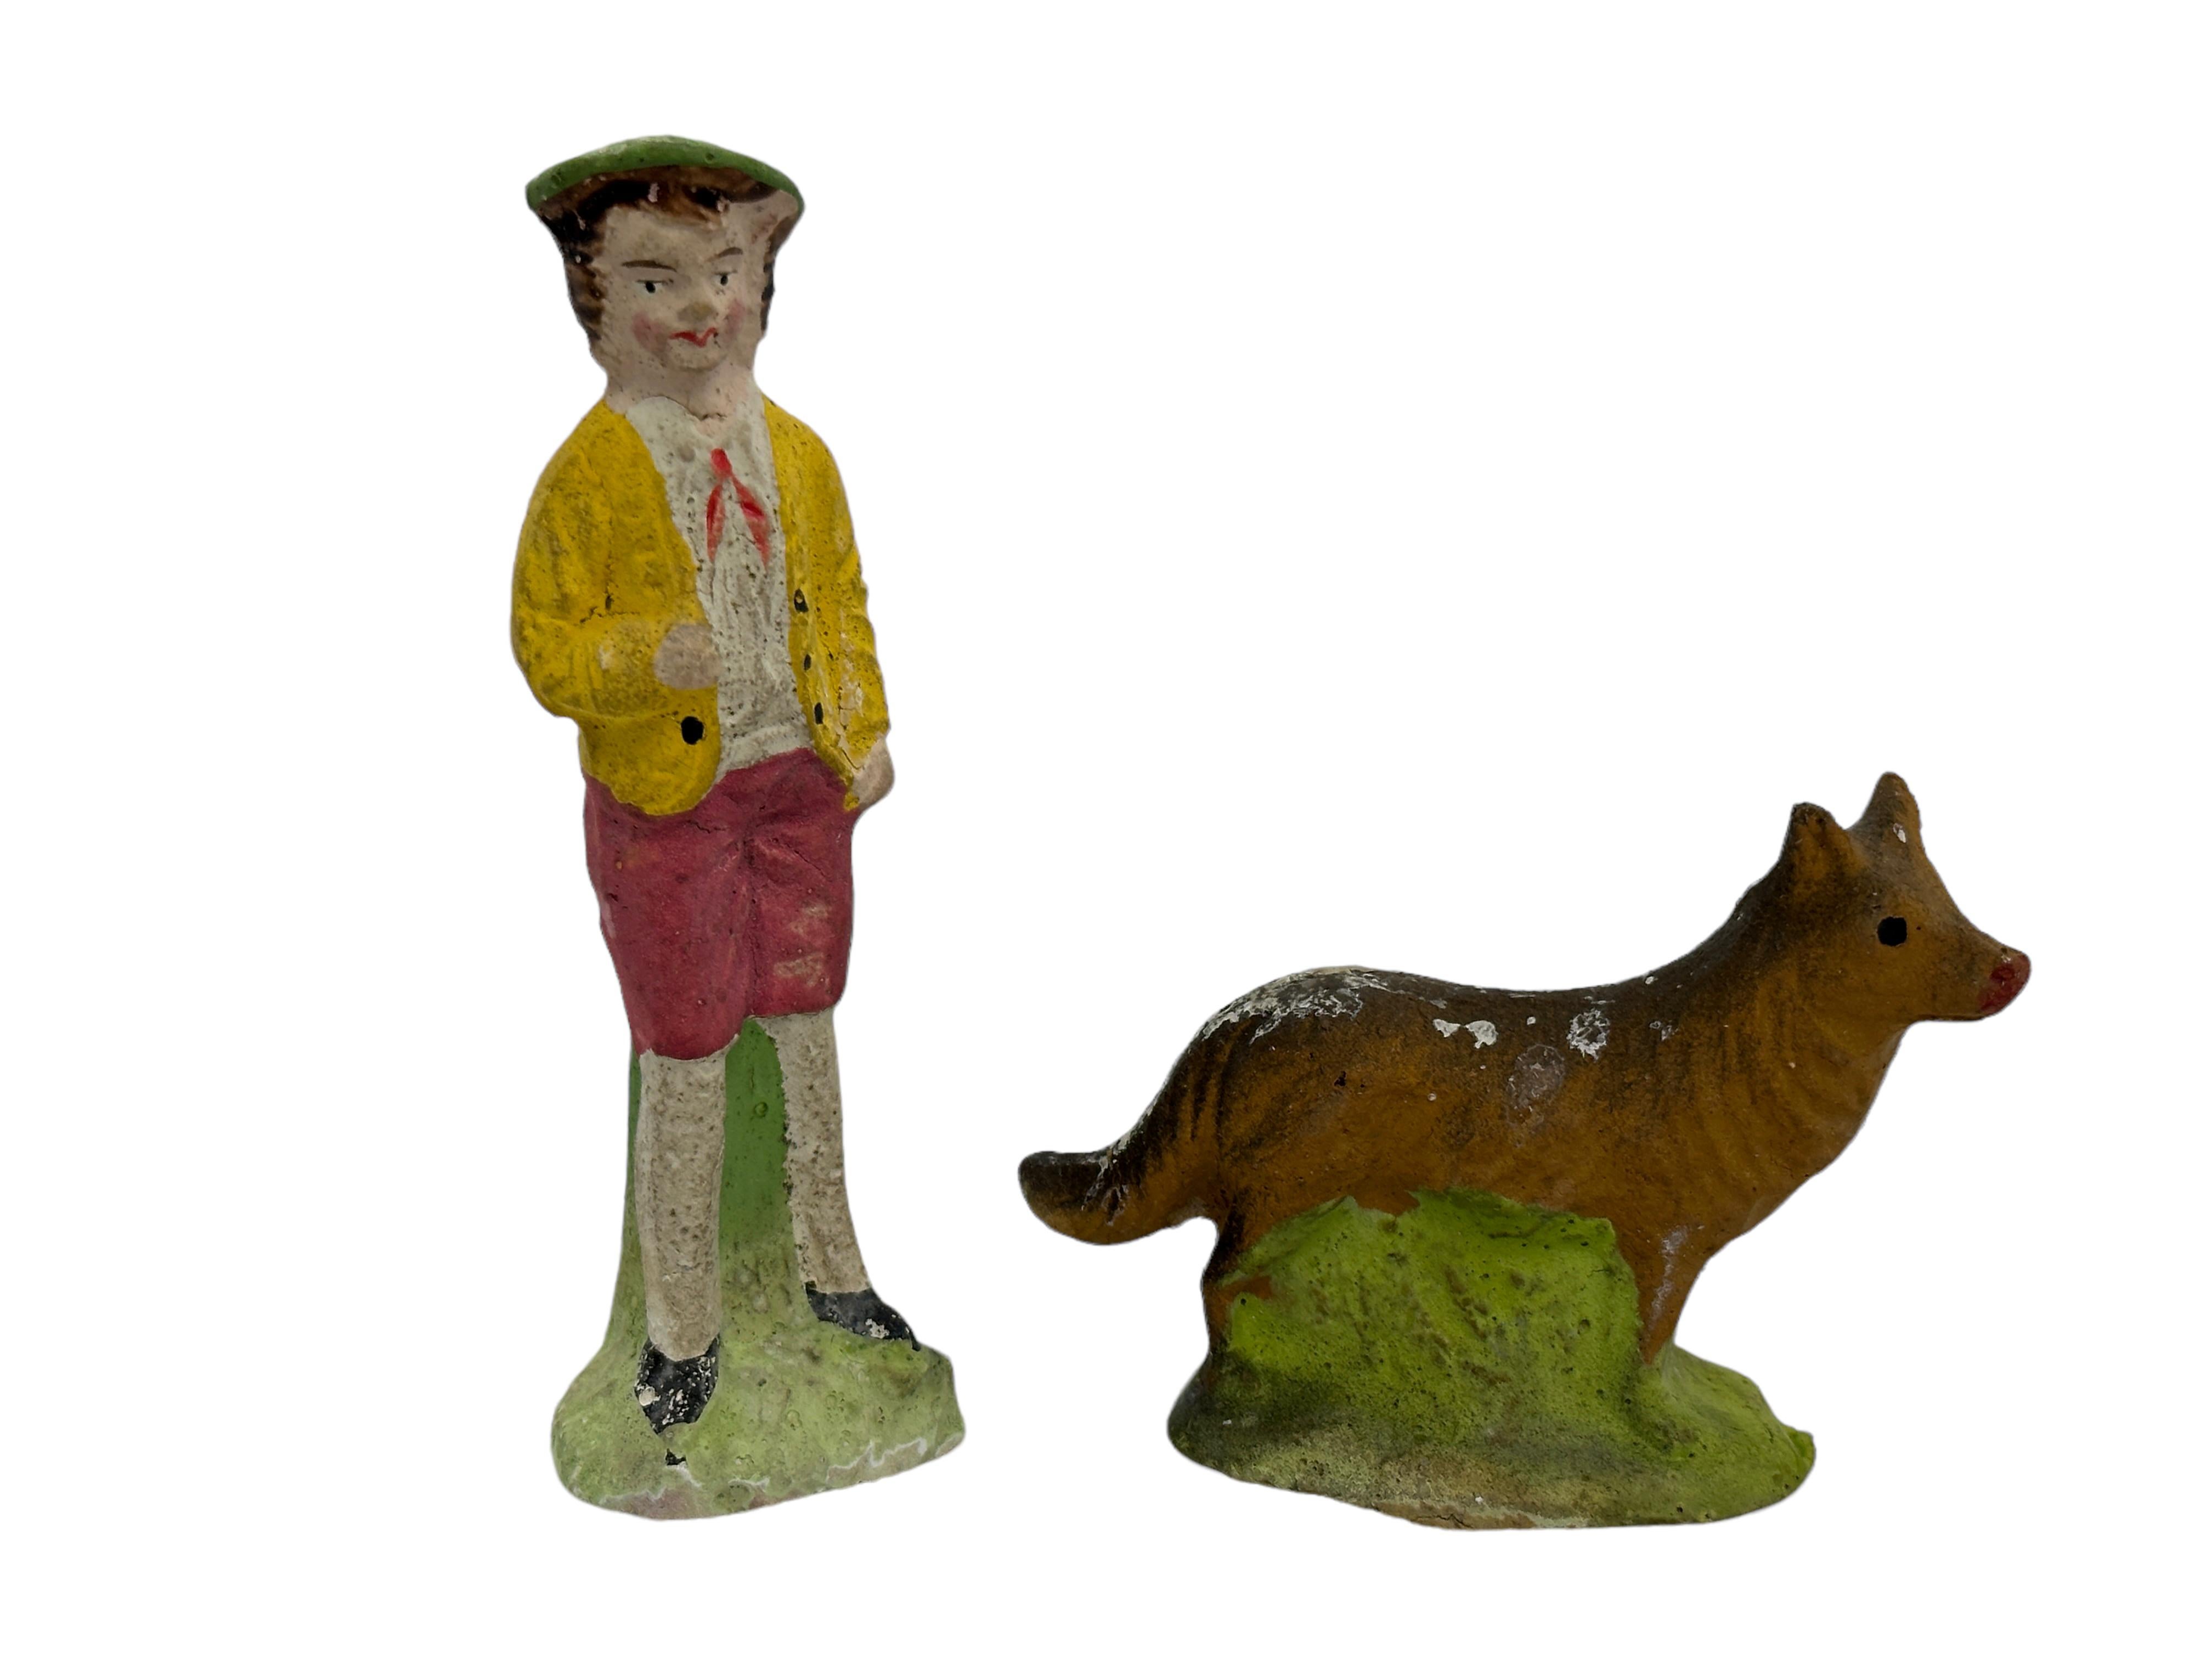 Composition Berger et mouton laineux Putz Toy Set Antique German Christmas 1900s, original Box en vente